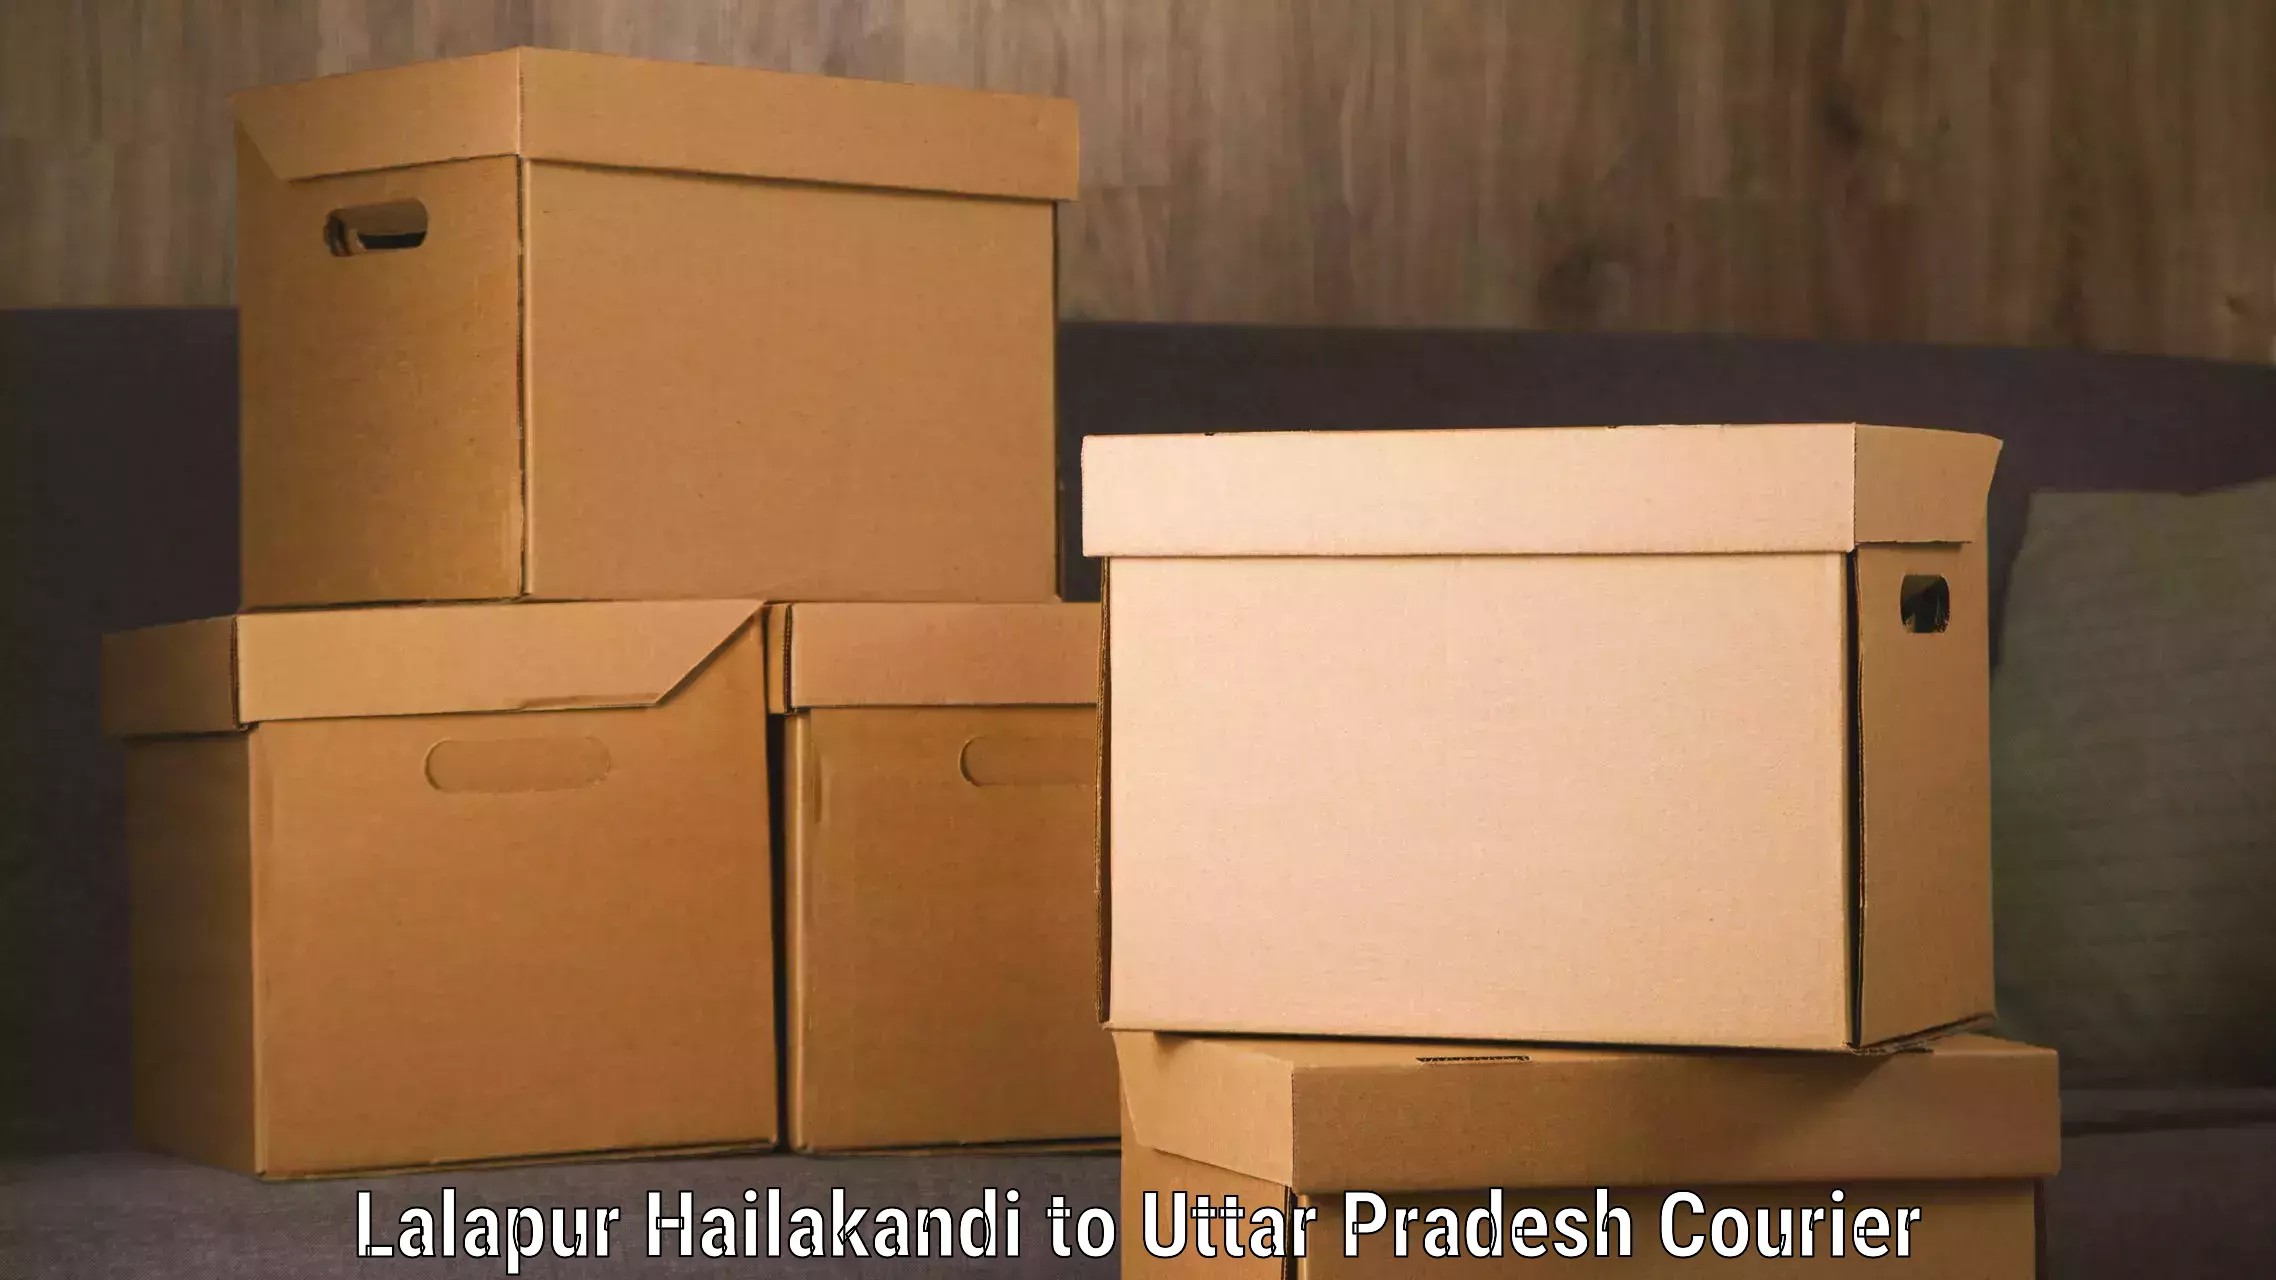 Luggage transport schedule Lalapur Hailakandi to Khalilabad